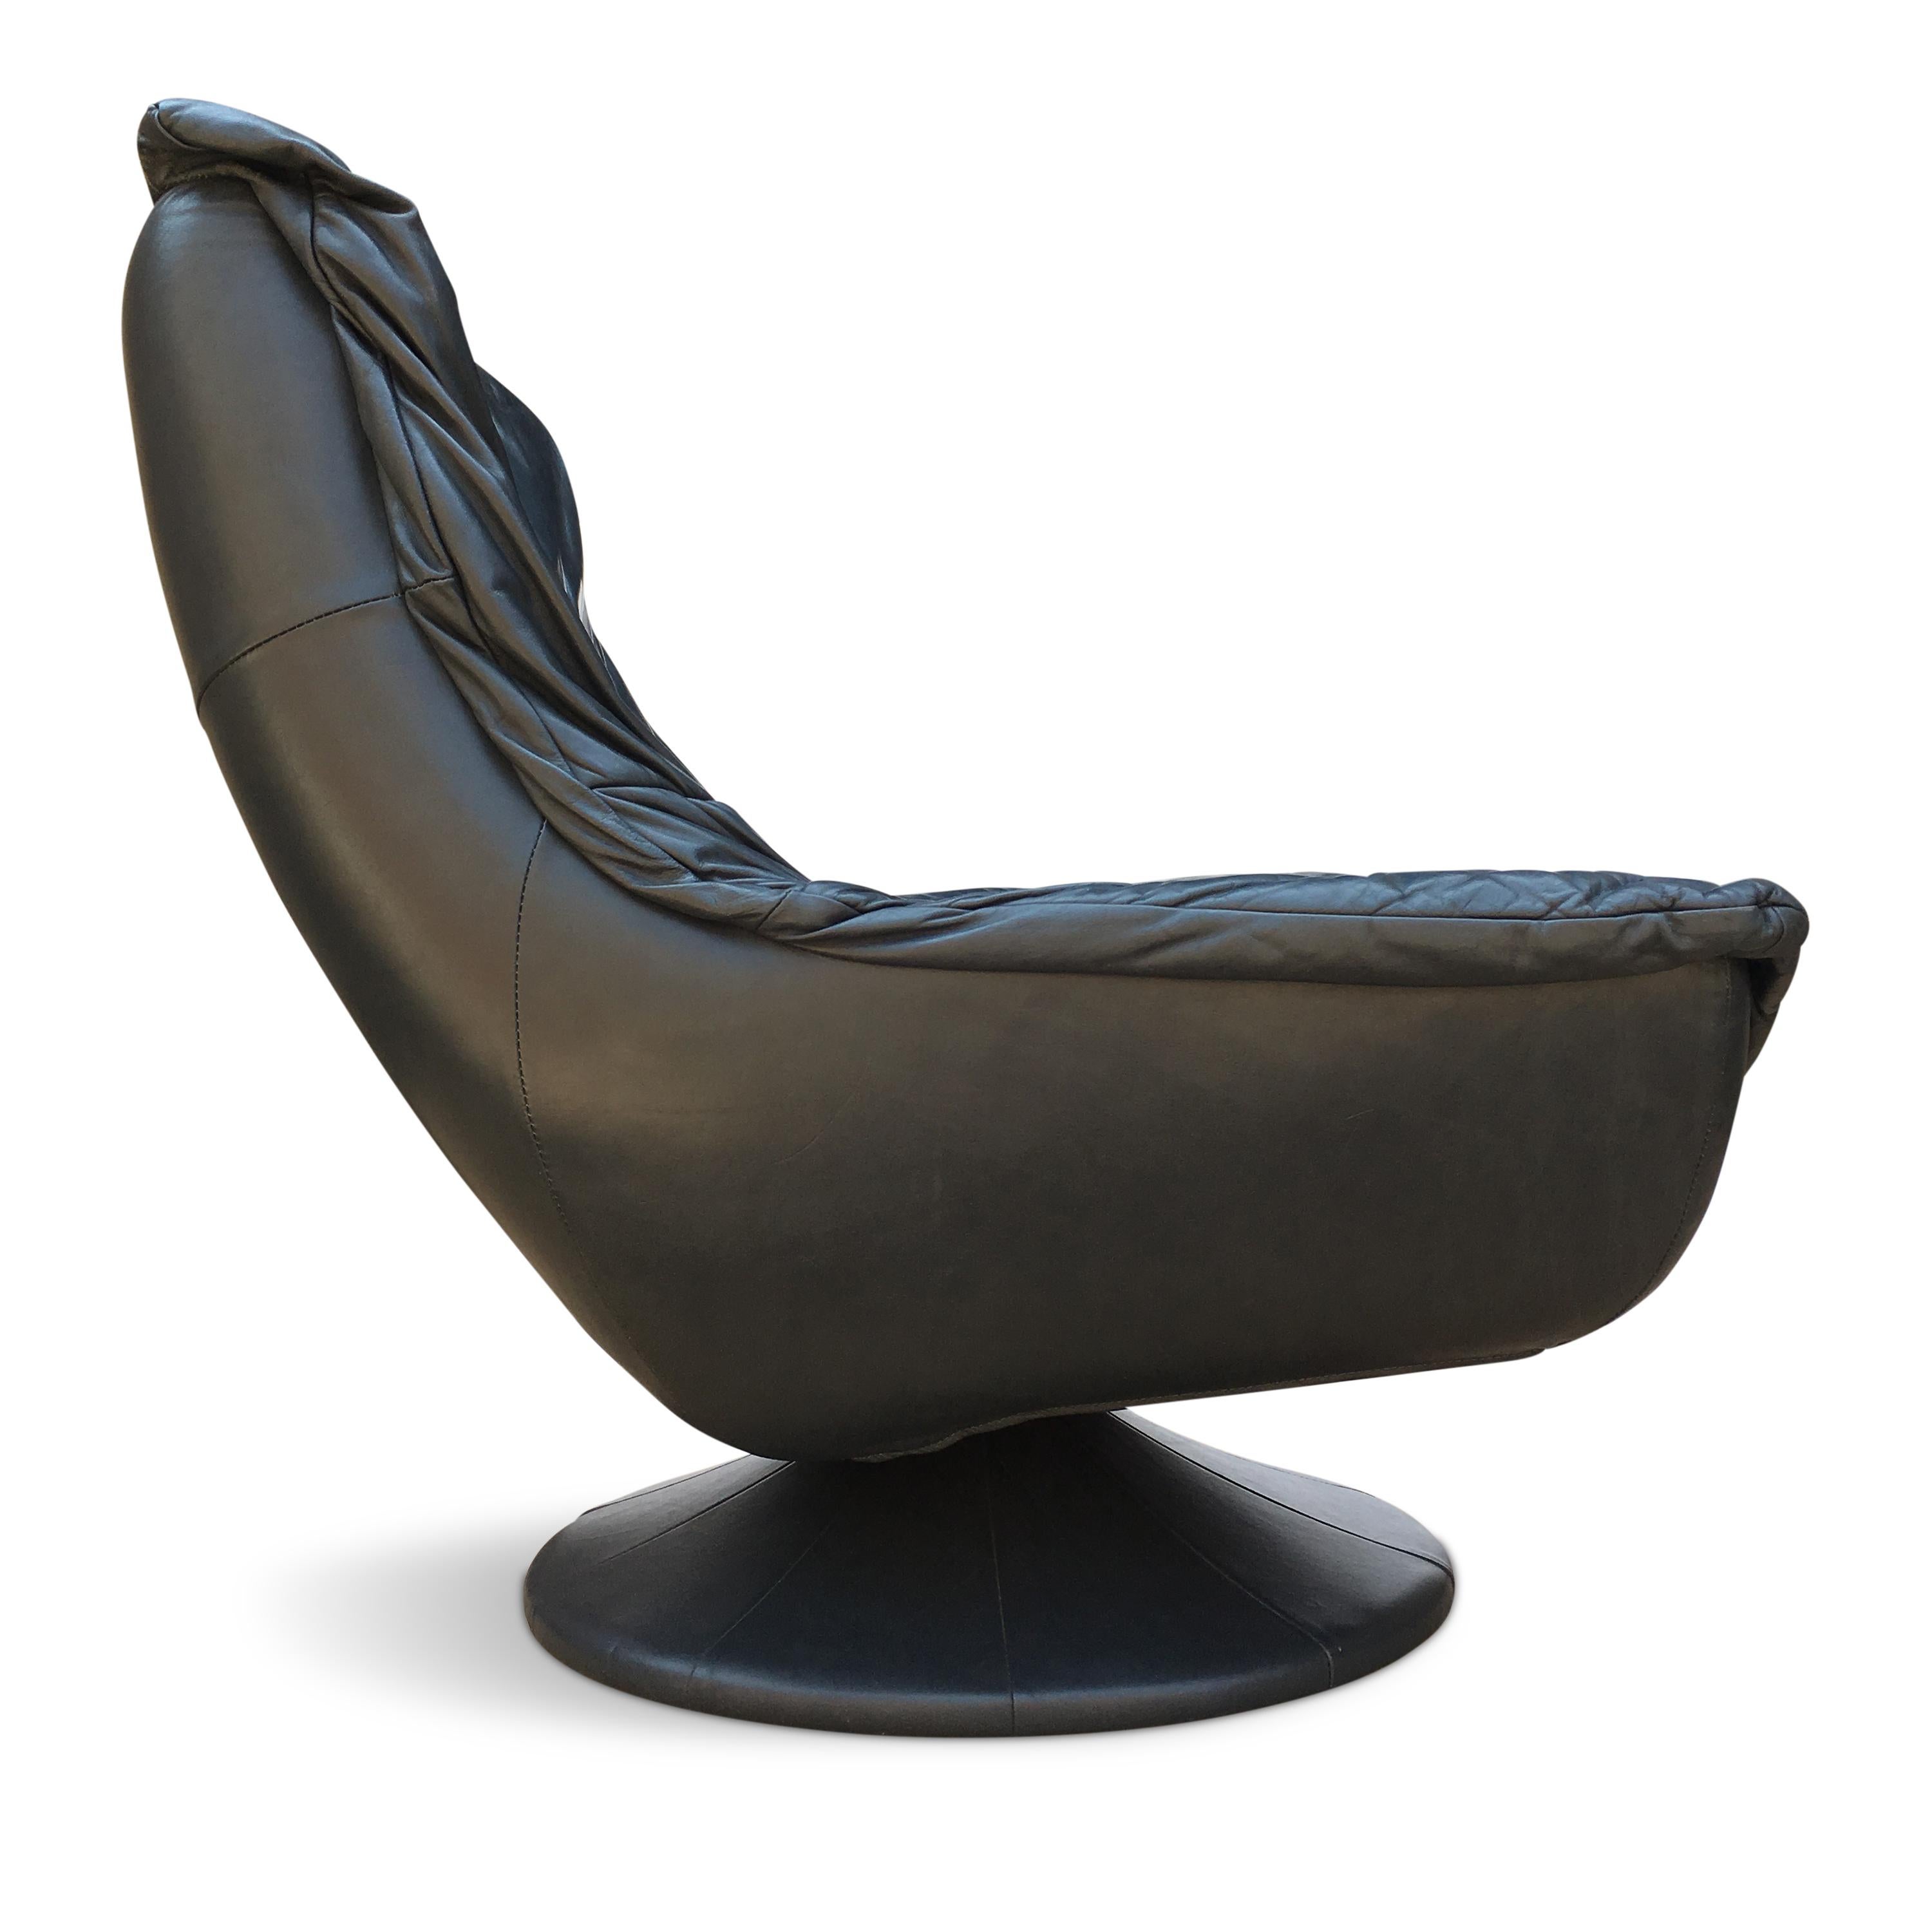 Very nice indigo blue/grey color.

Measures: Lounge chair: H 90 cm, W 85 cm, D 88 cm
Ottoman: H 40 cm, D 61 cm, W 59 cm.

 